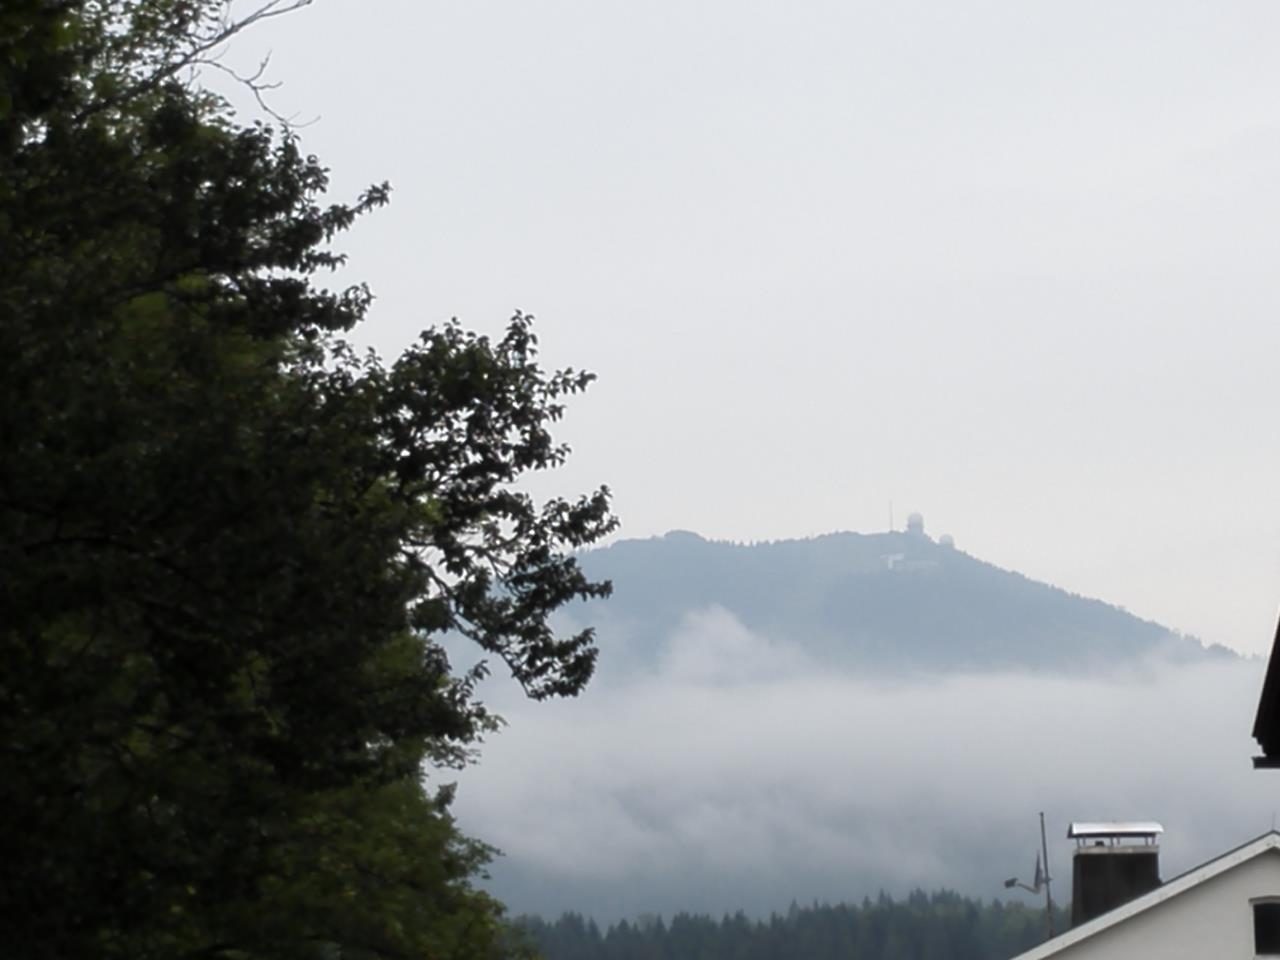 Der Große Arber im NebeGut zu erkennen sind die beiden Radomen auf dem Gipfel.